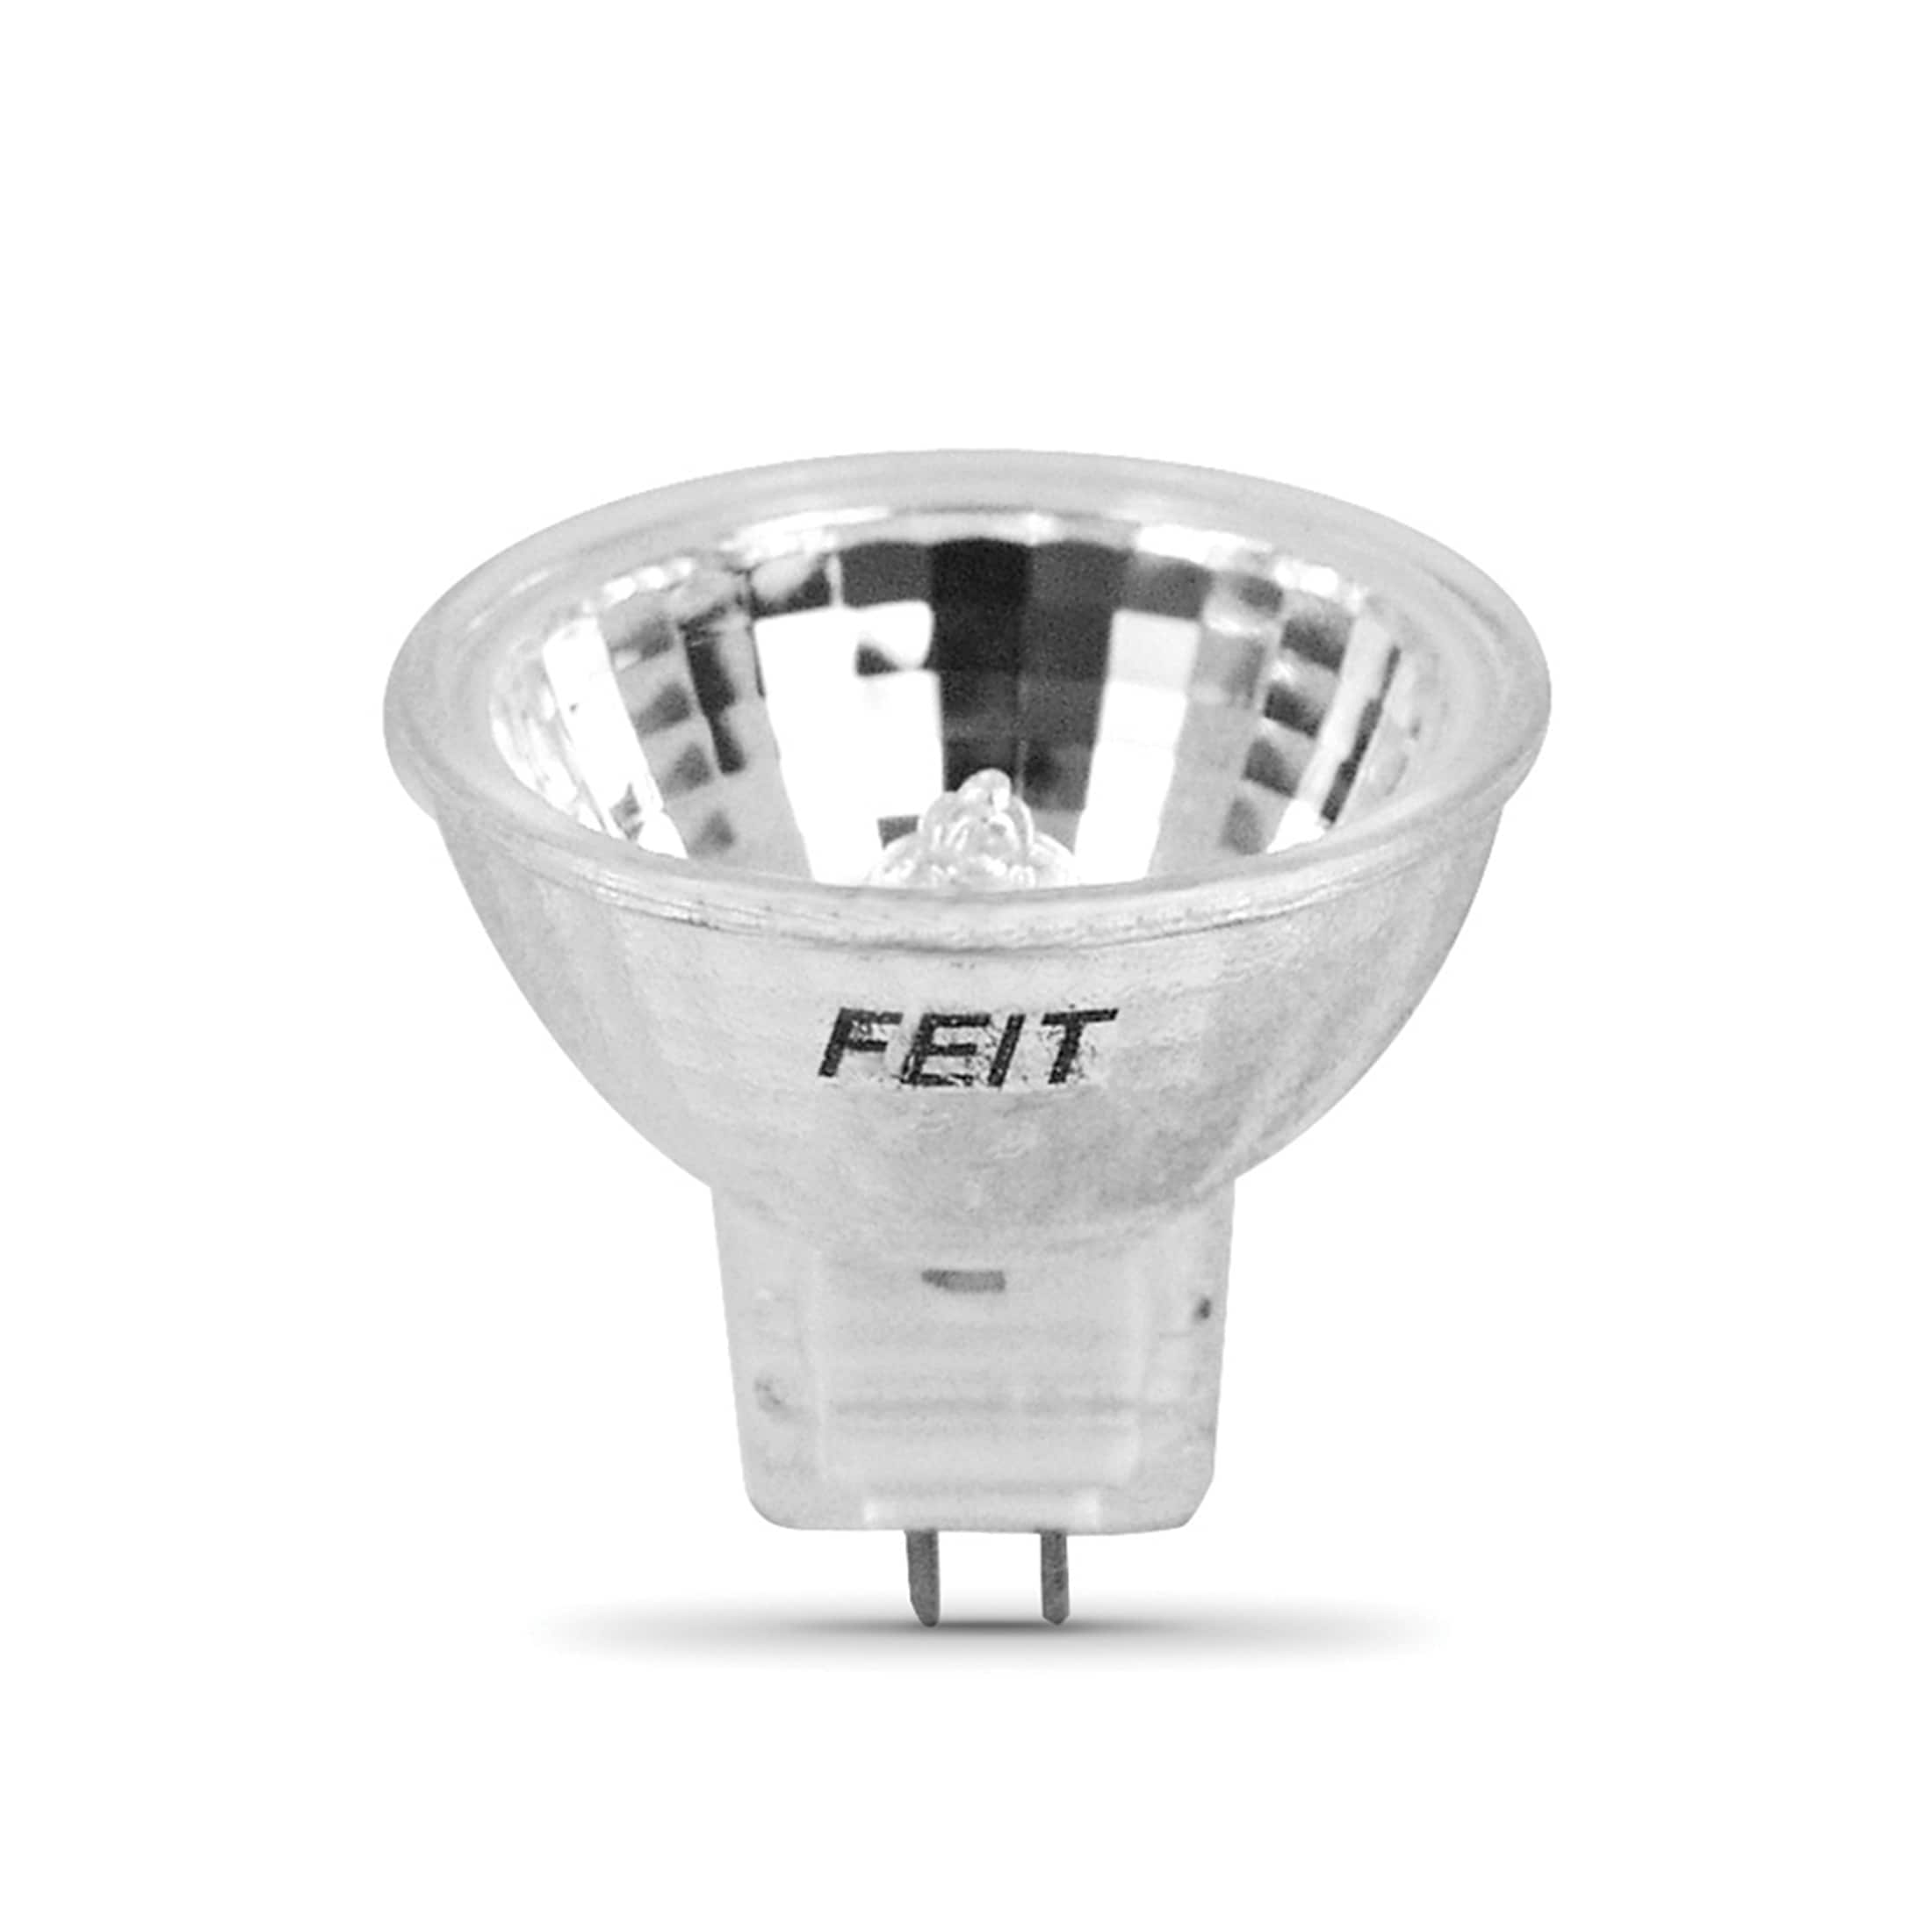 MR11 Light Bulbs, 12V 10W Halogen Light Bulbs 2 Pin, FTD Spotlight Bulb,  GU4 Bi-Pin Base, Dimmable, 2700K Warm White, 2 Prong Light Bulb for